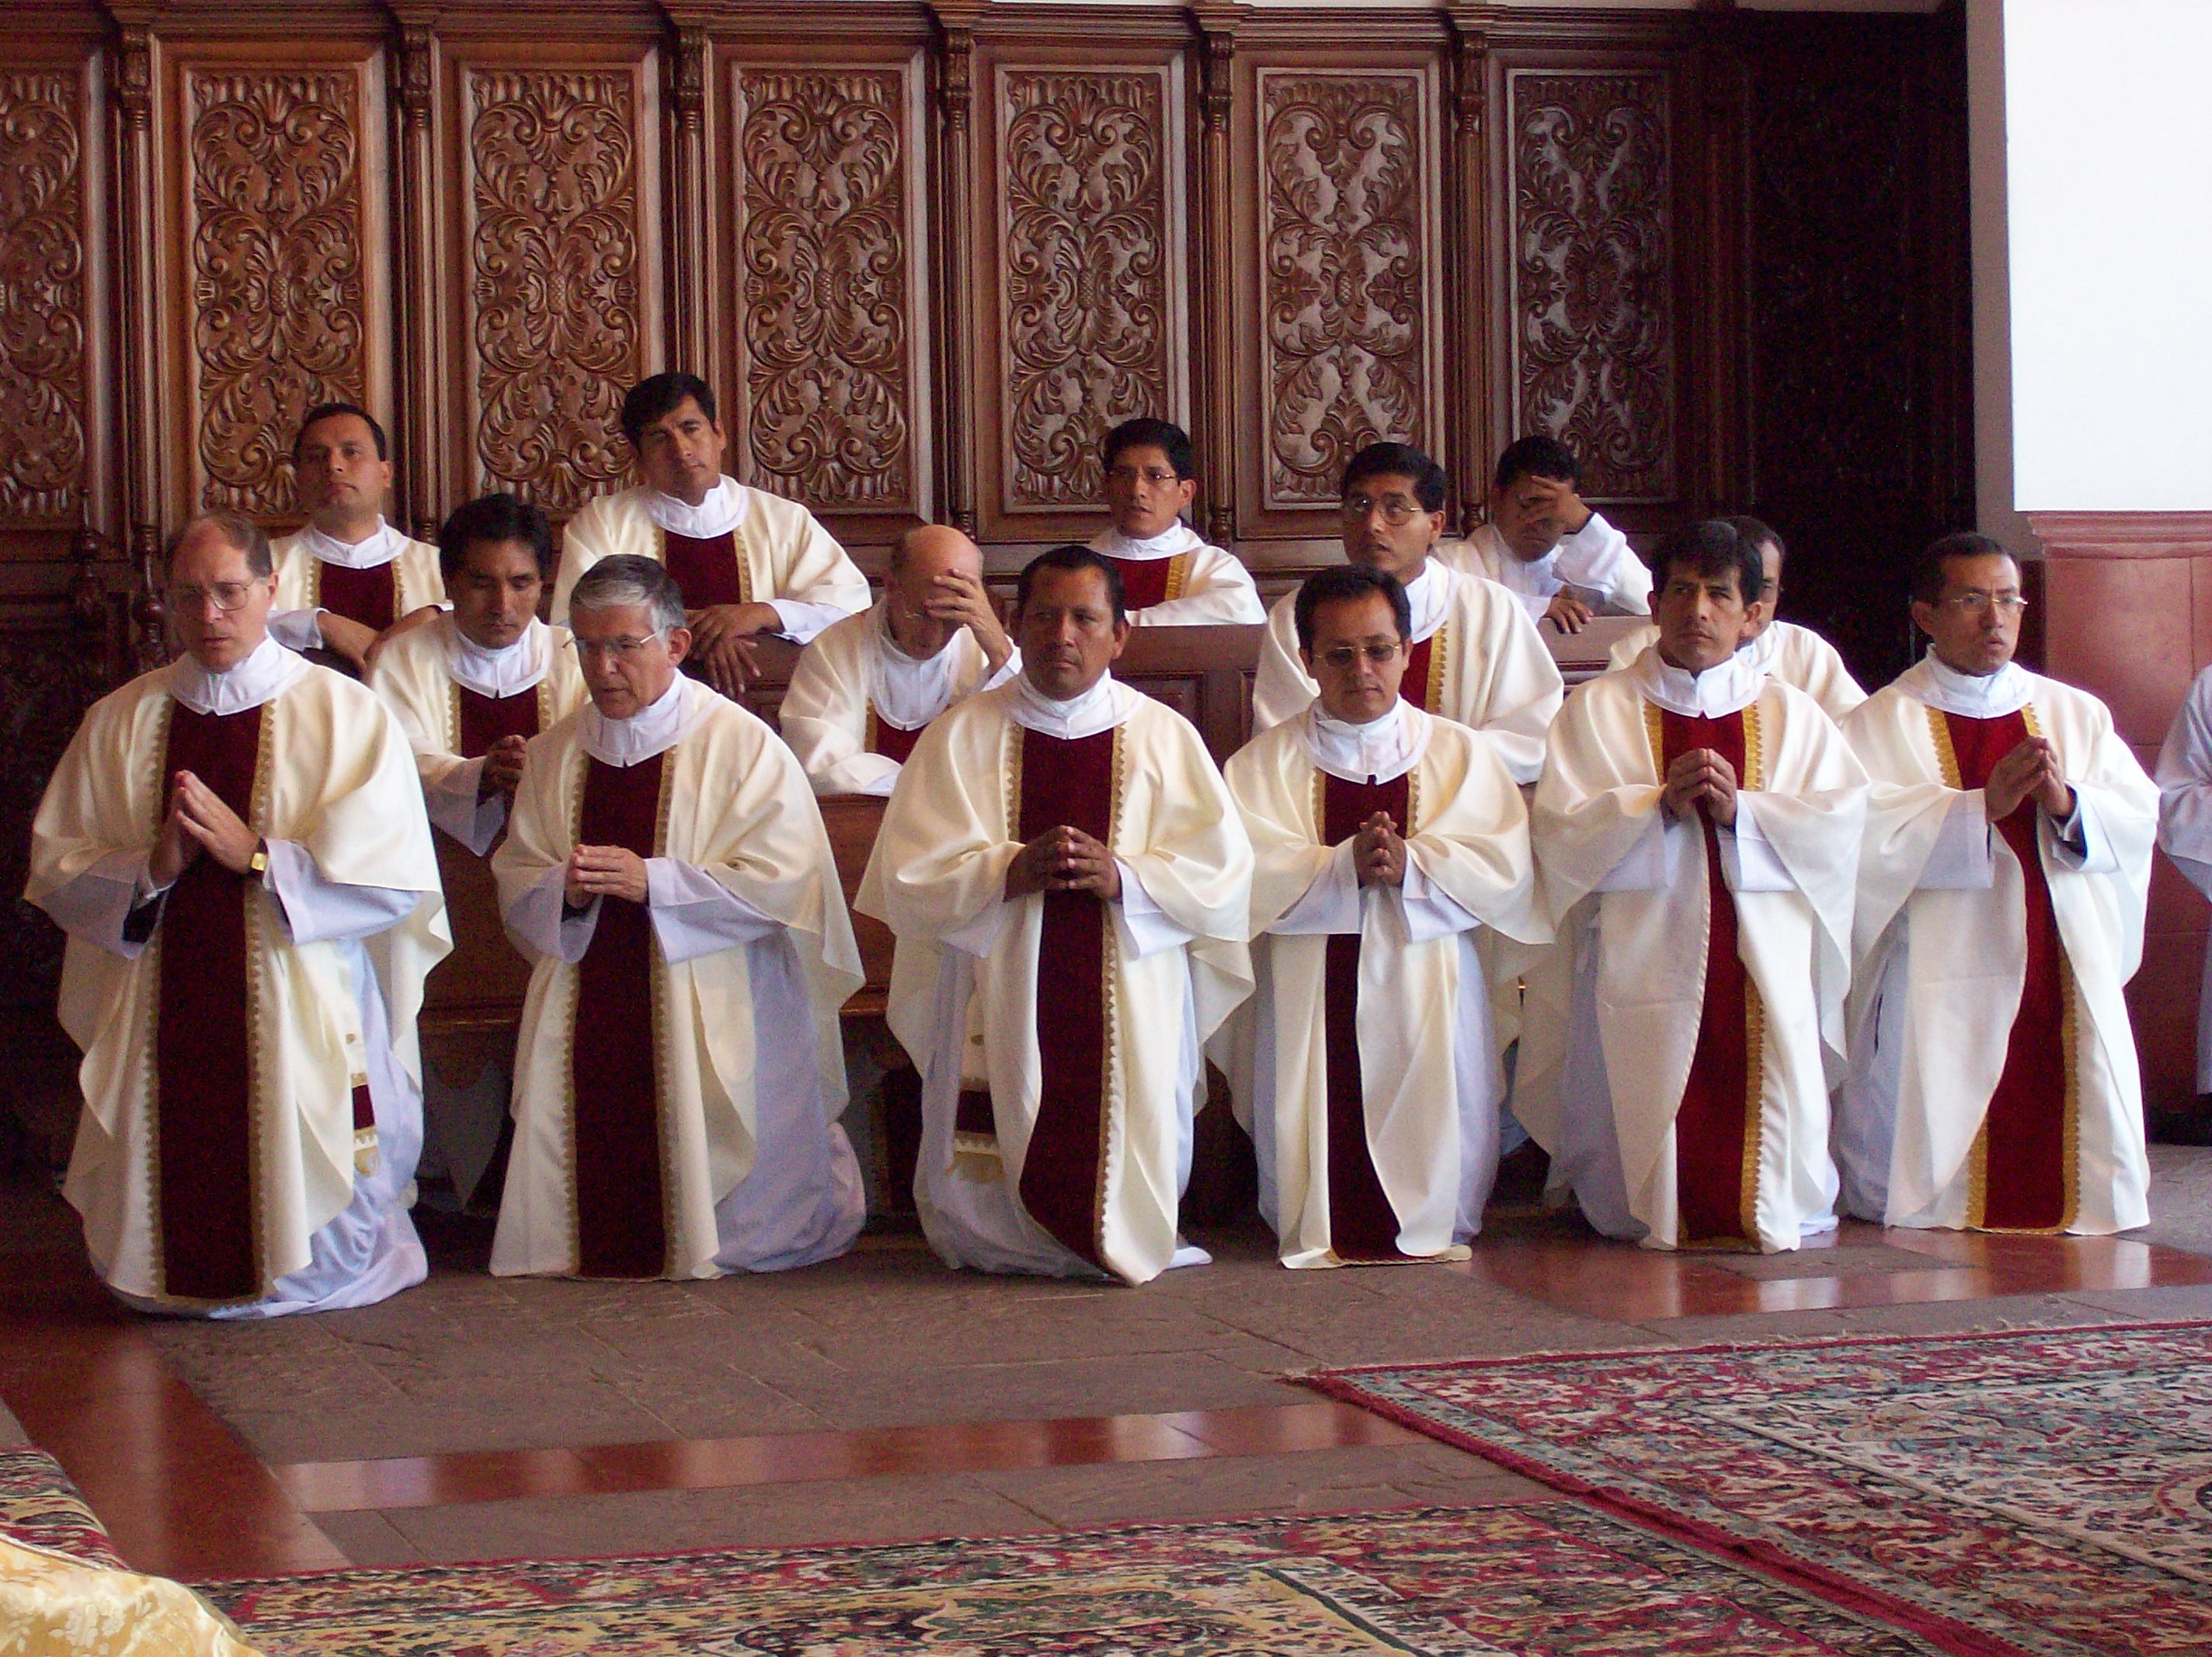 https://arquimedia.s3.amazonaws.com/27/sacerdotes/sacerdotes-de-rodillasjpg.jpg